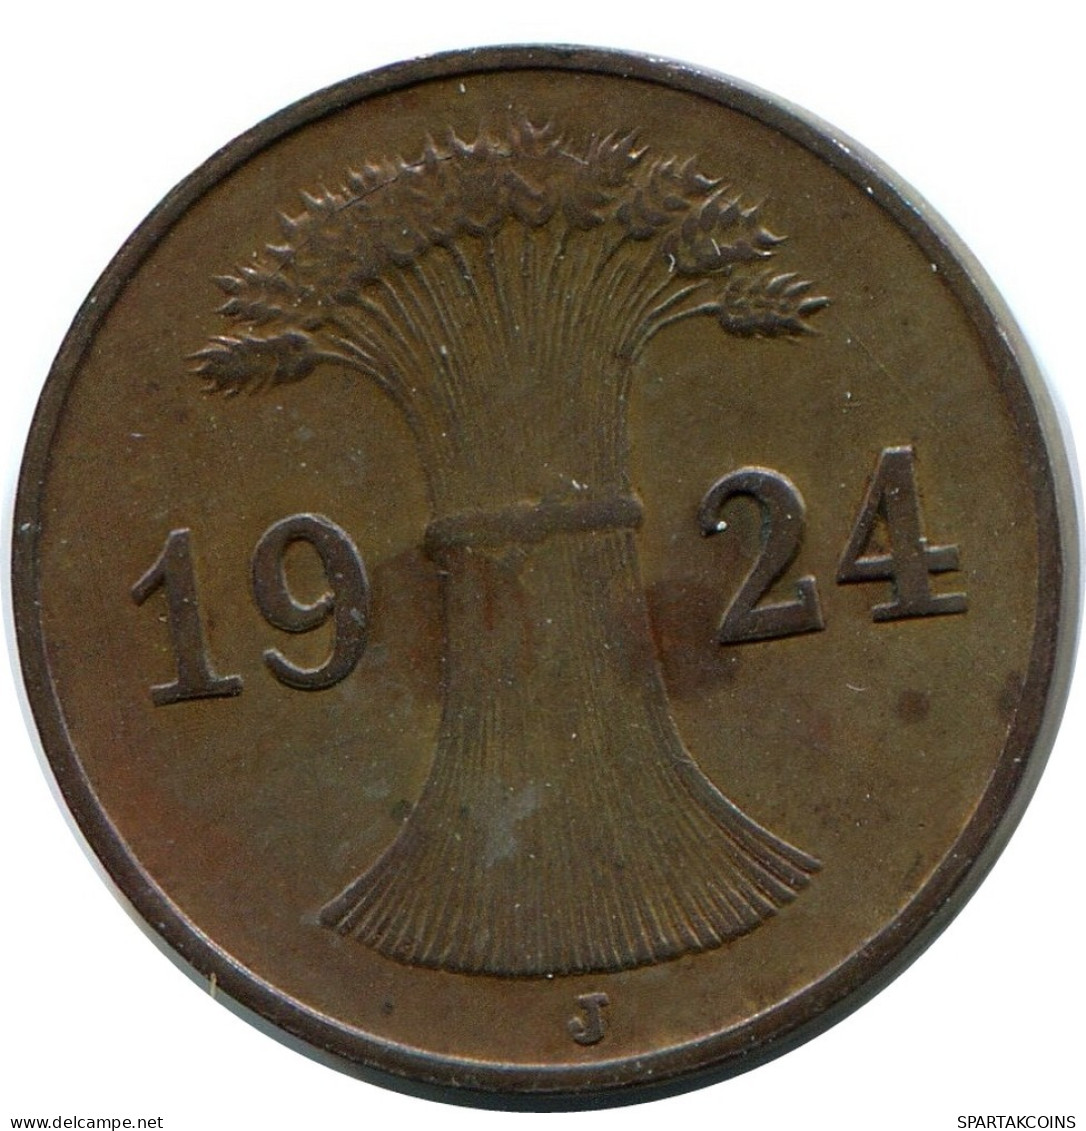 1 REICHSPFENNIG 1924 J GERMANY Coin #DB773.U.A - 1 Rentenpfennig & 1 Reichspfennig